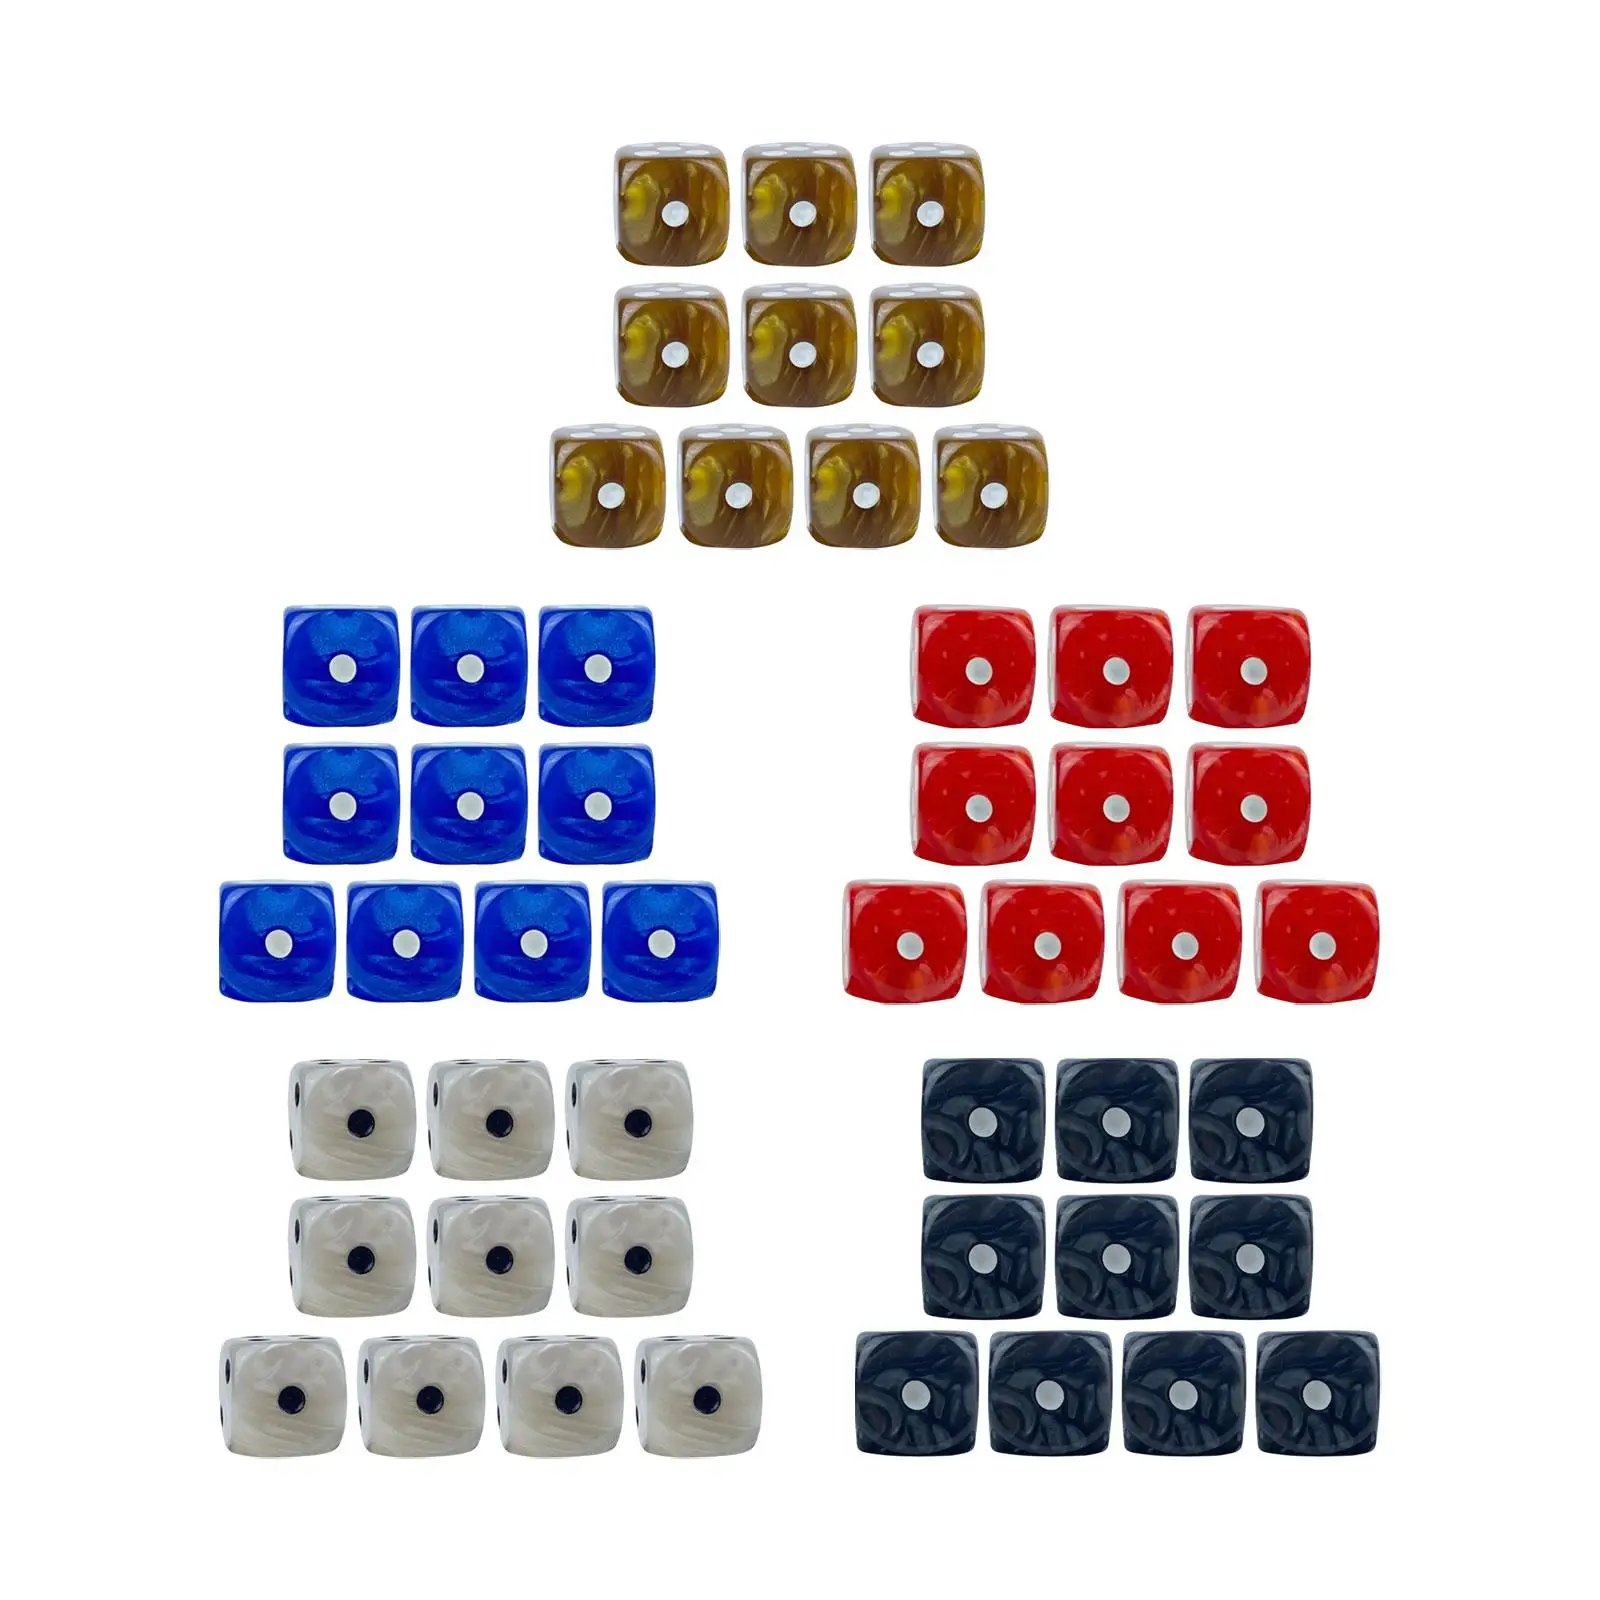 10 Штук 6-Сторонние Кубики Игральные Кубики Игровые Кубики Учебные Пособия По Математике И Счету Вечерние Игровые Кубики 16 мм Кубики для Карточных Игр KTV Bar